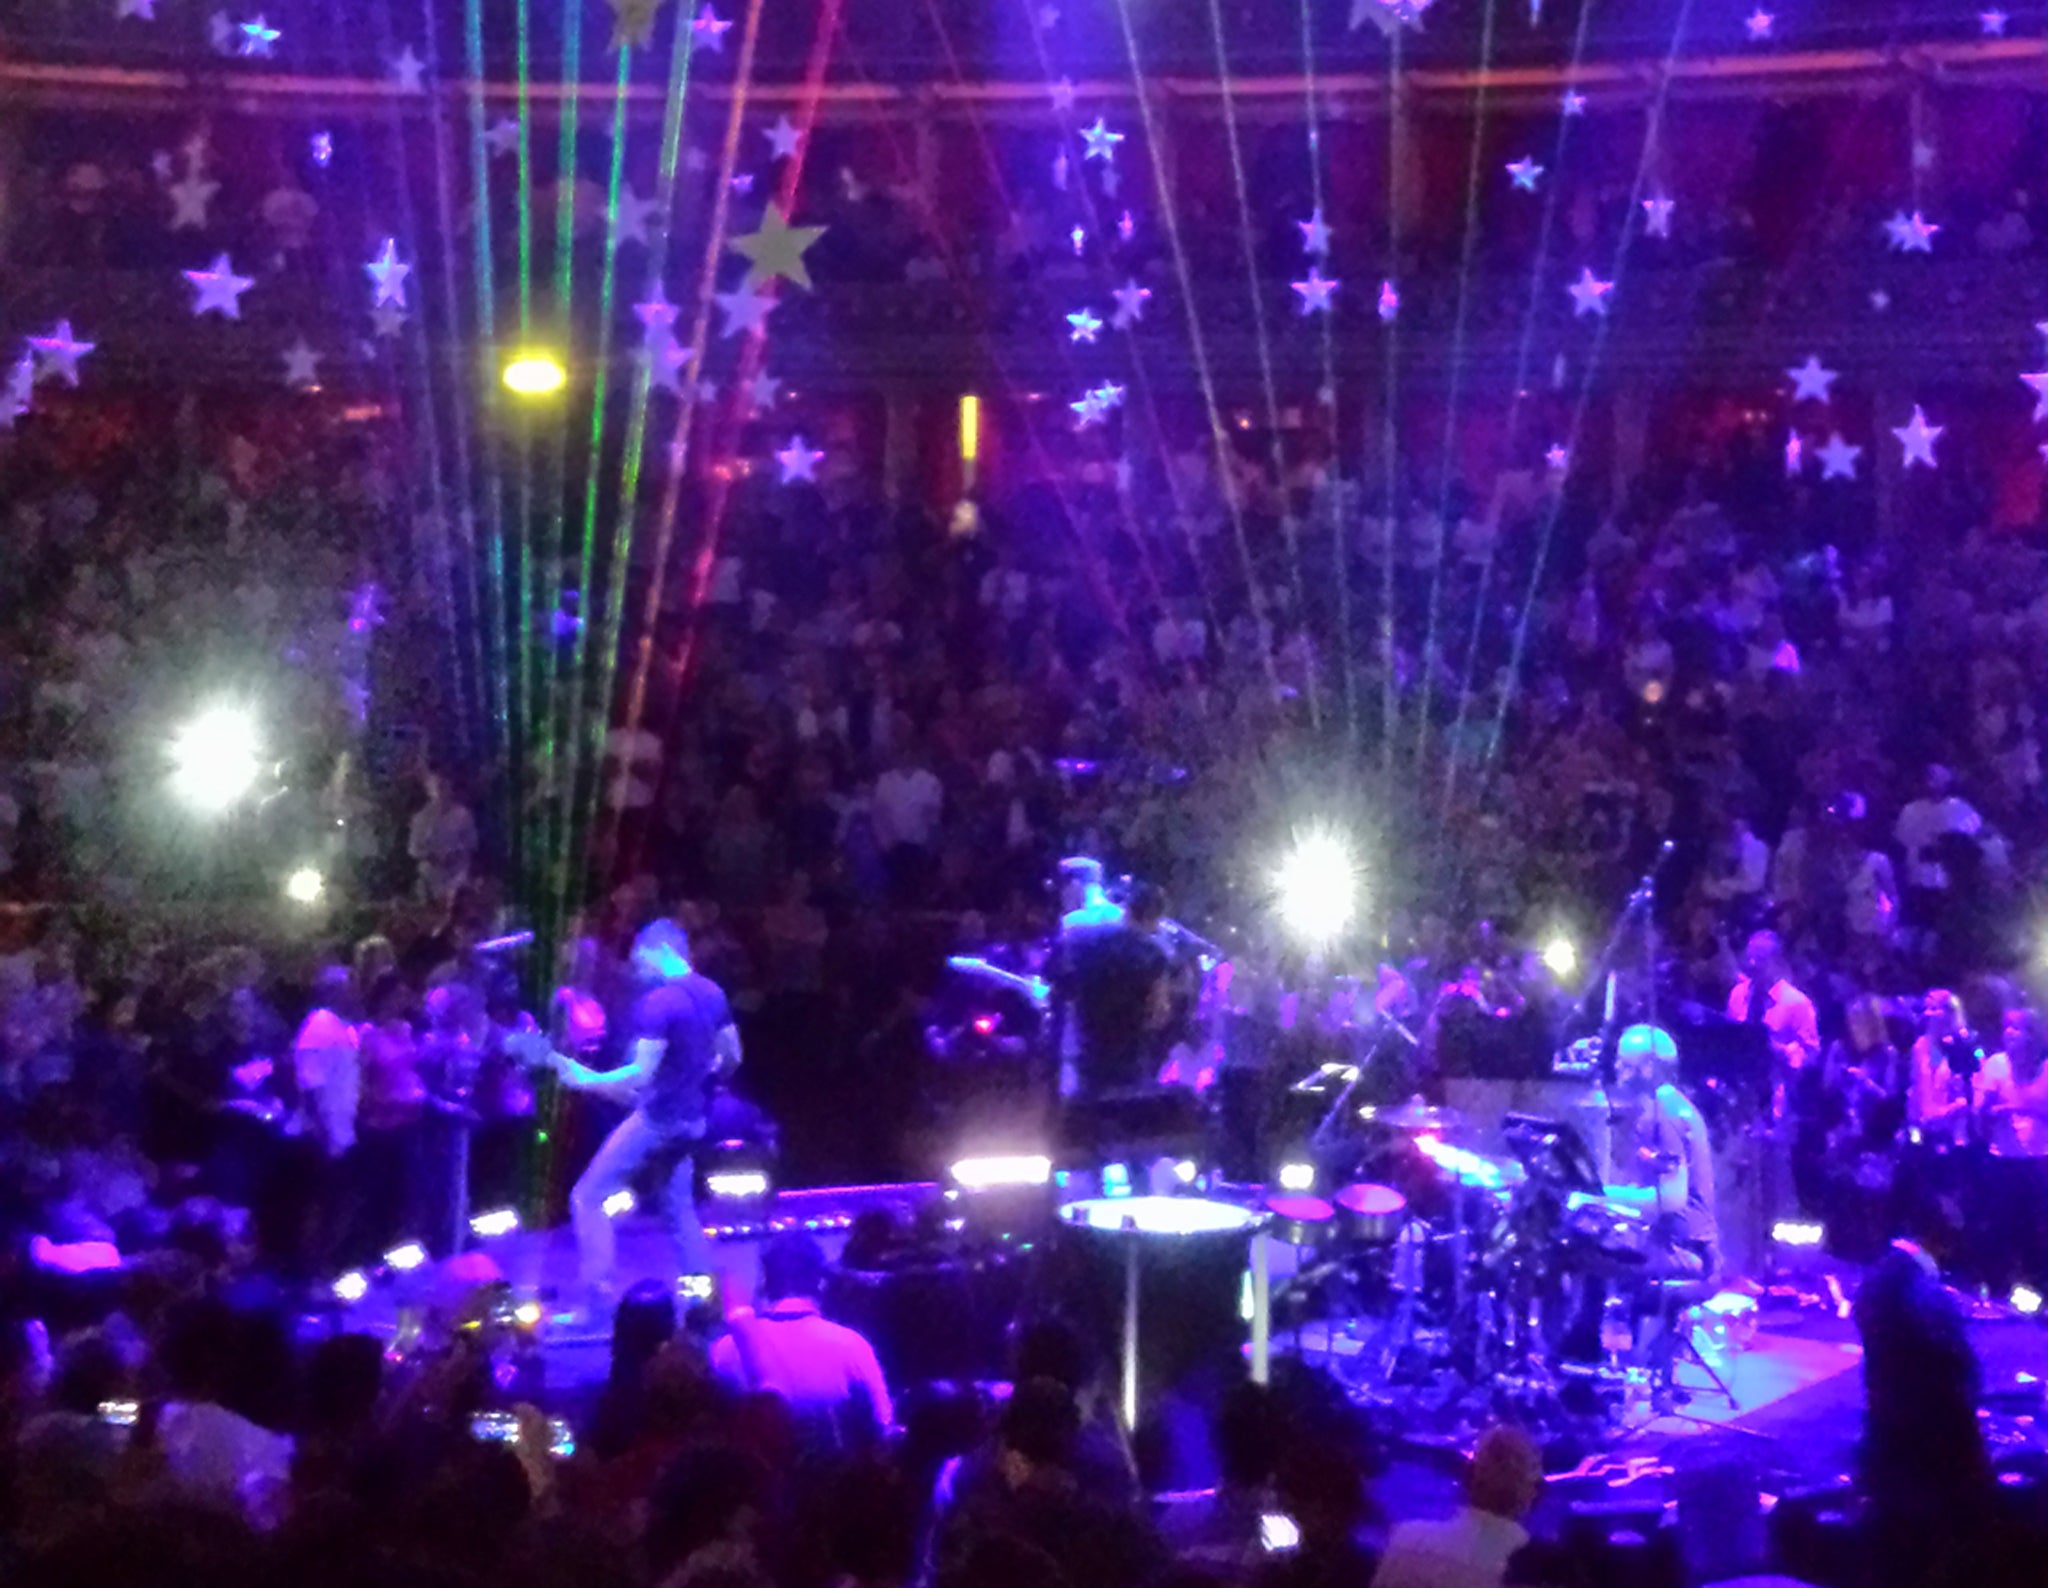 Coldplay perform at the Royal Albert Hall